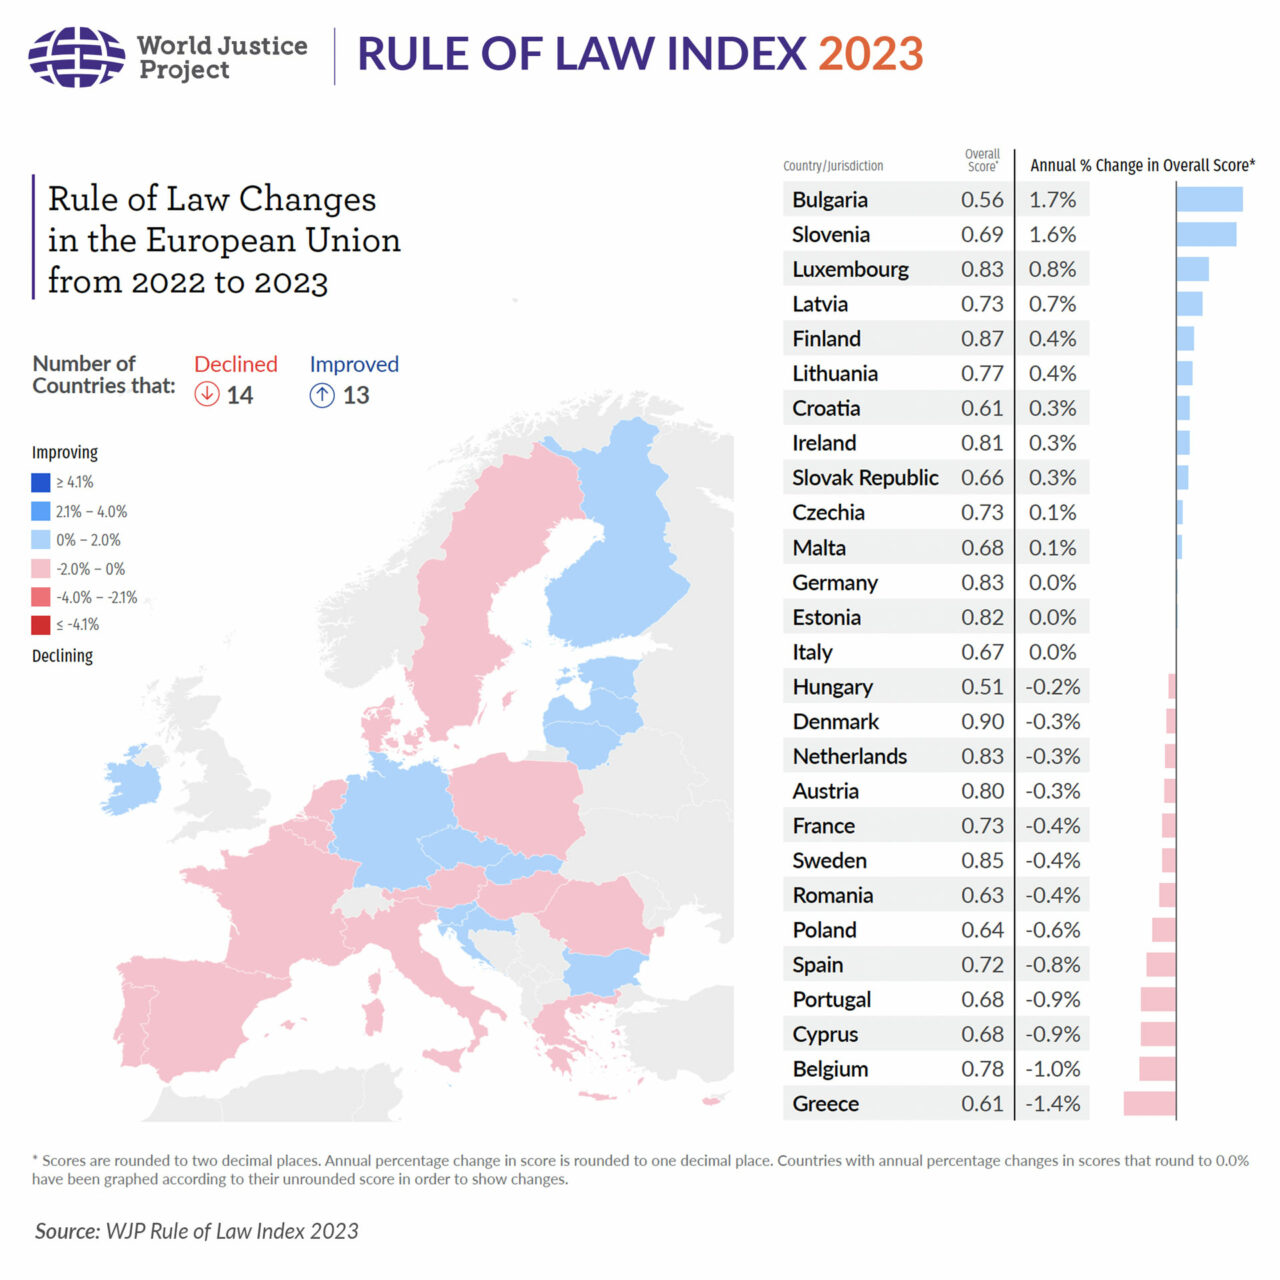 تغييرات سيادة القانون في الاتحاد الأوروبي 2022-2023